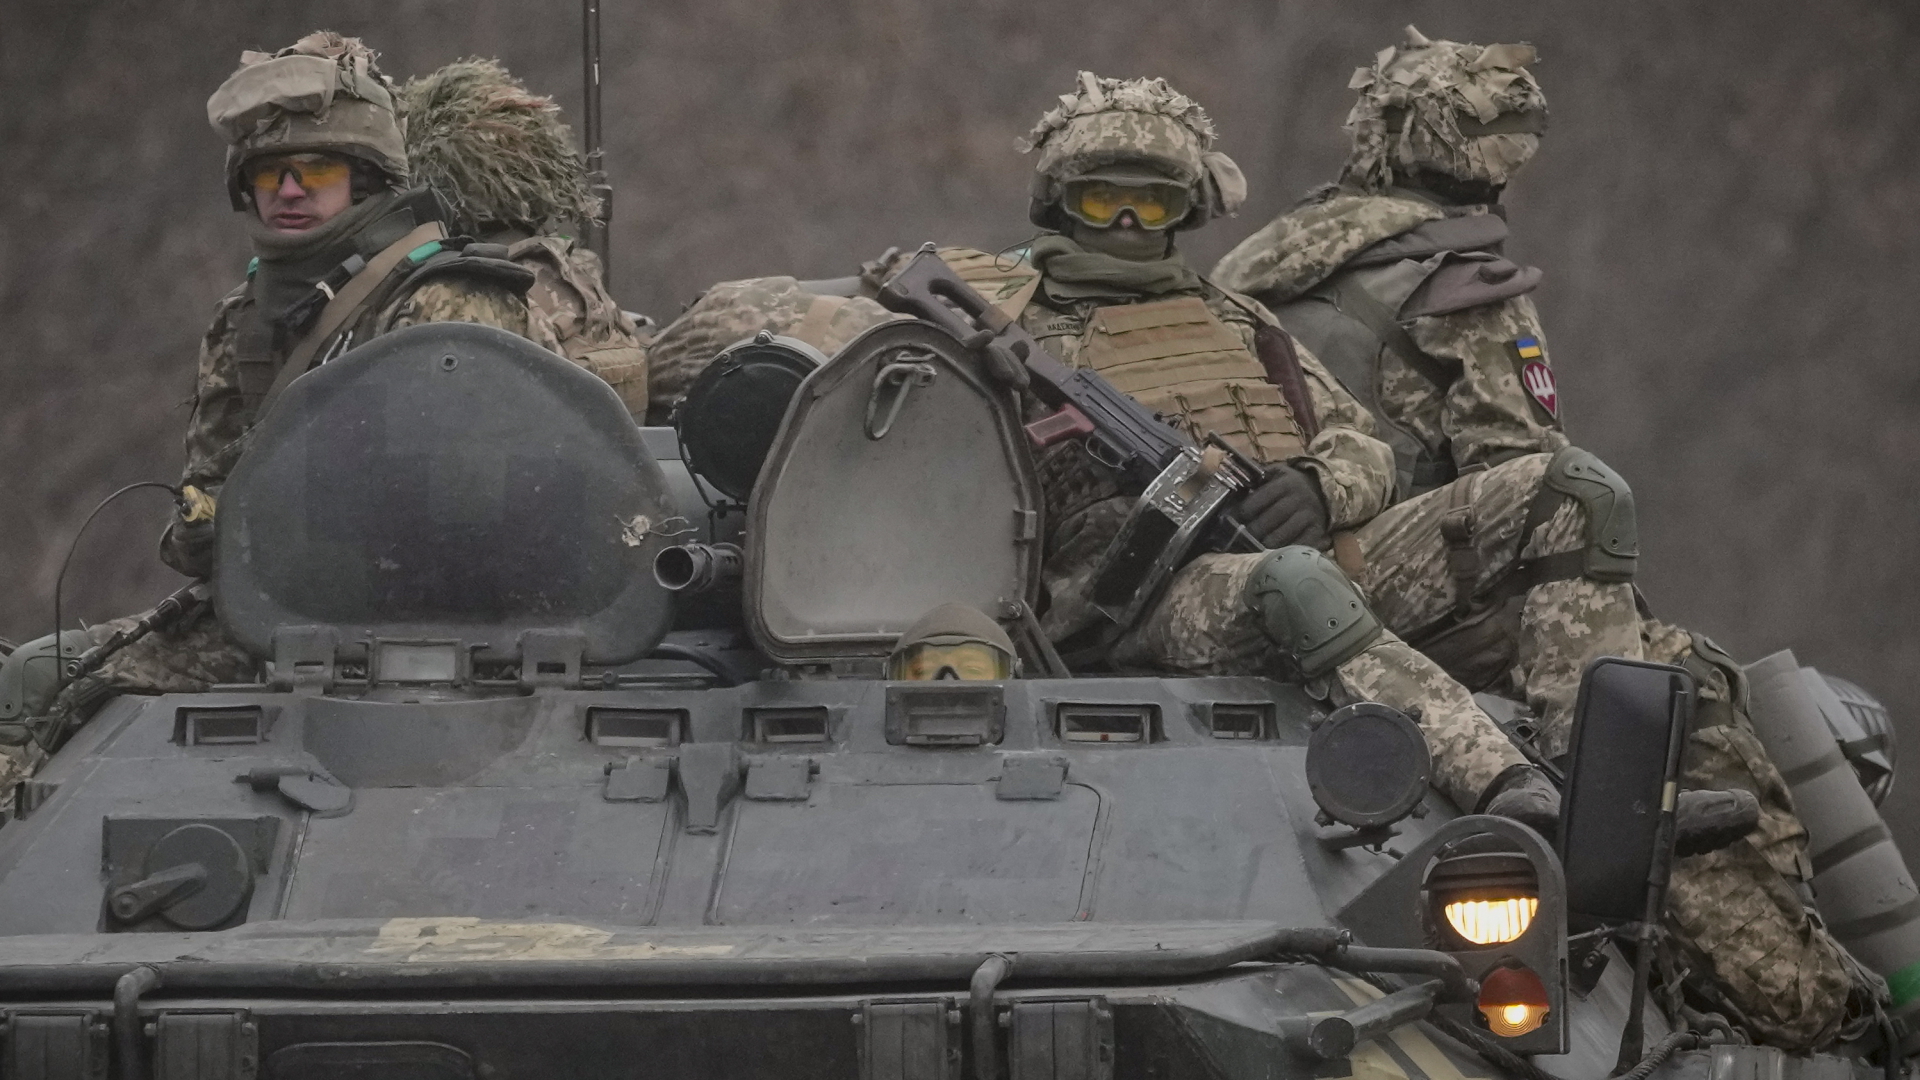  Ukrainische Soldaten sitzen auf einem gepanzerten Mannschaftstransporter. | dpa